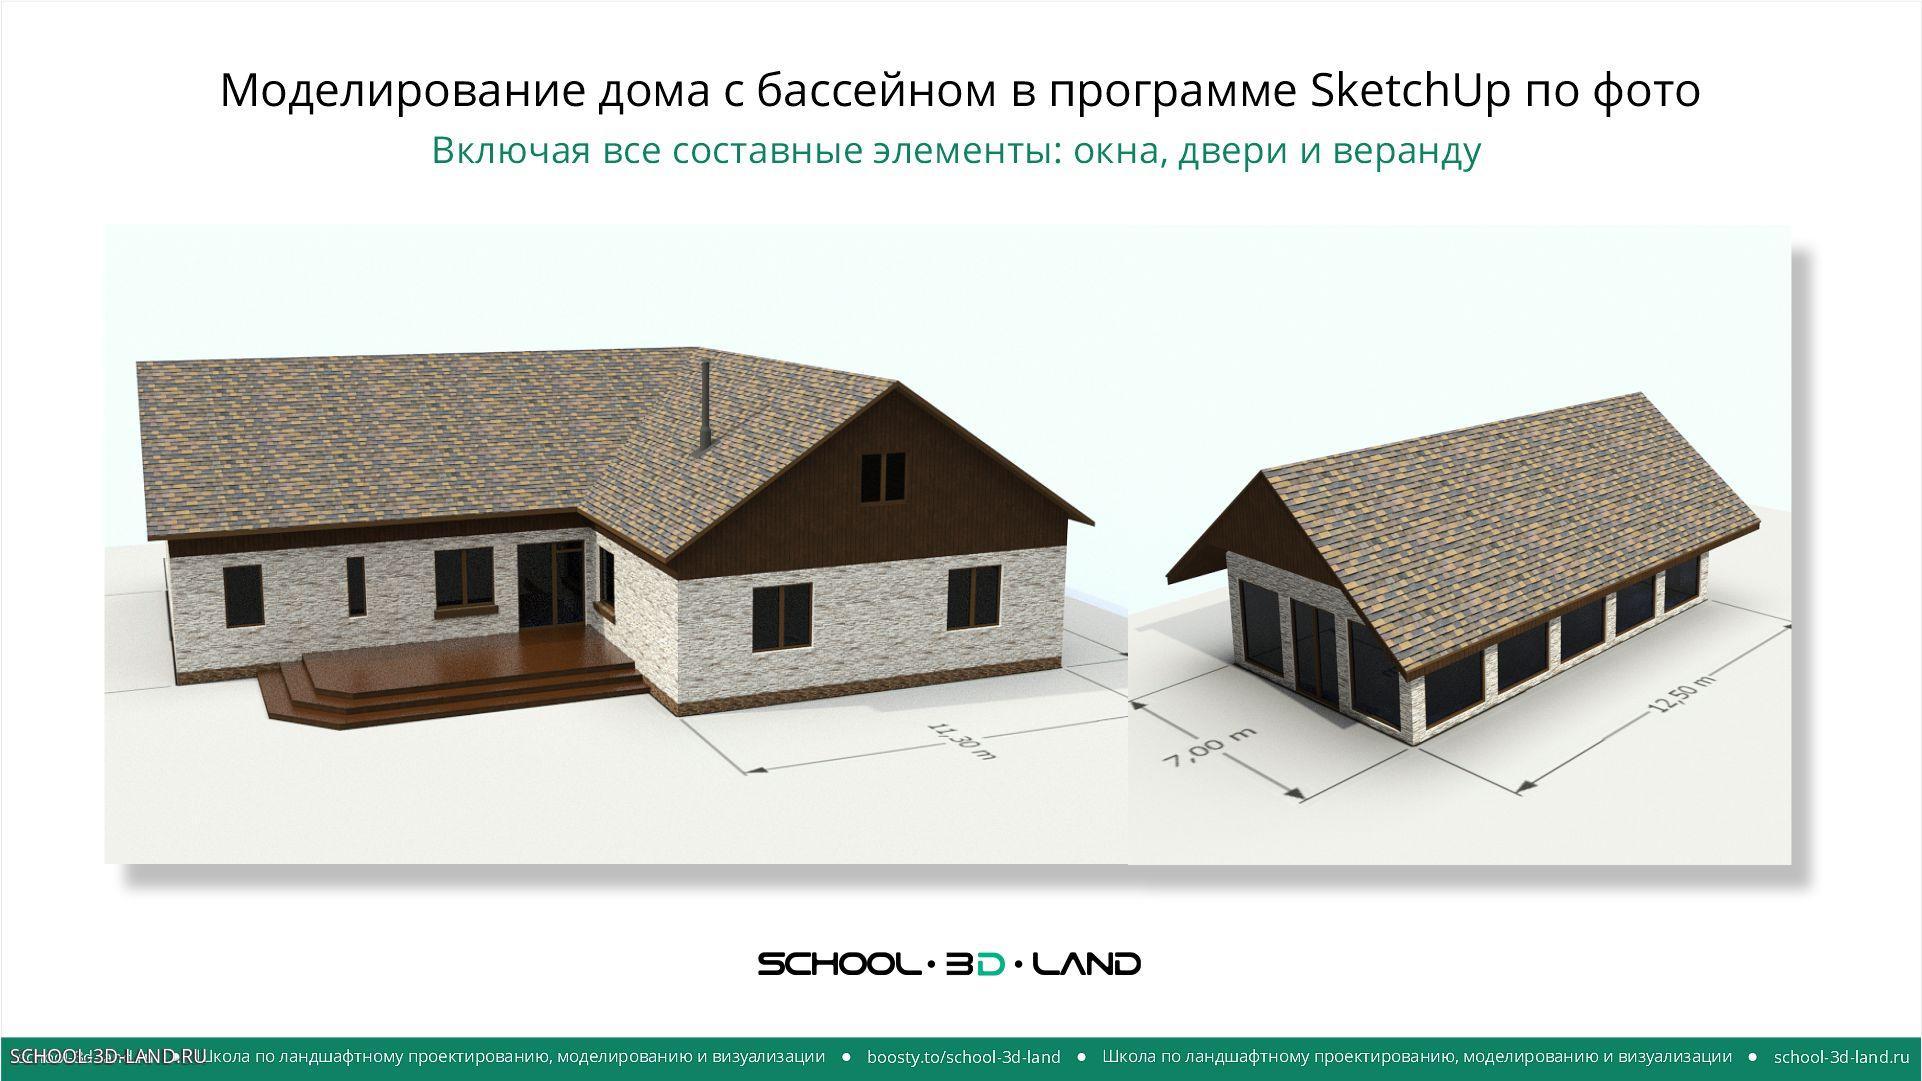 Моделирование дома с бассейном в программе SketchUp. Части 1-2-3